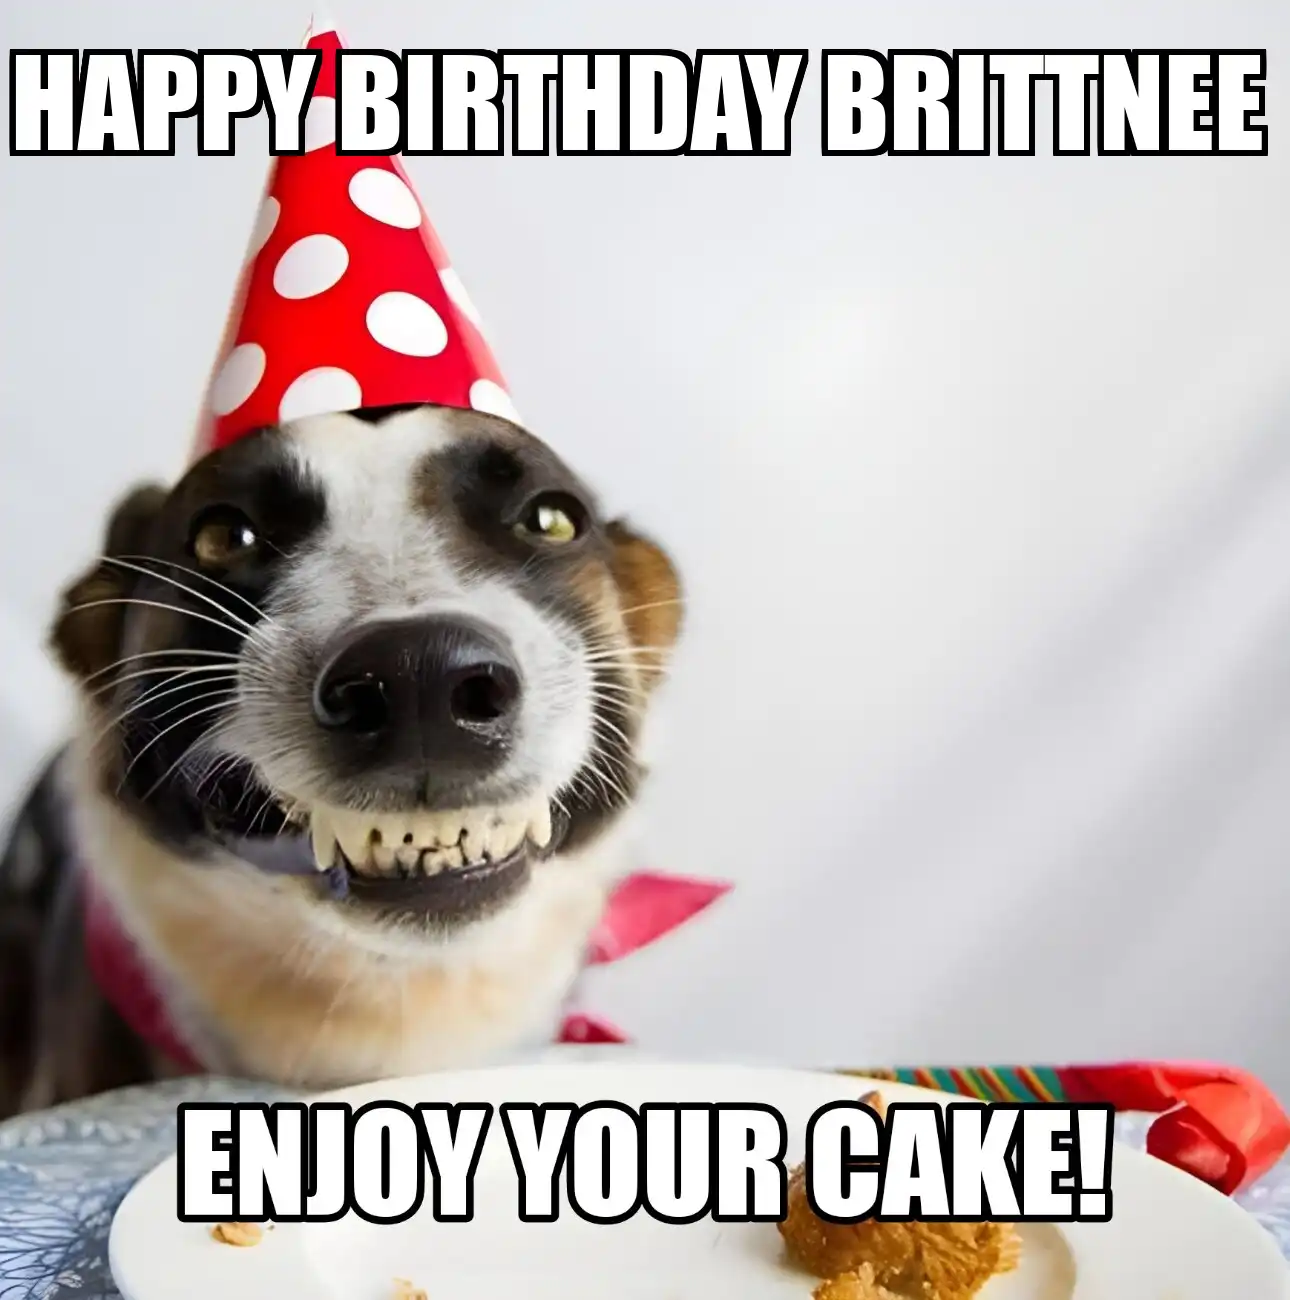 Happy Birthday Brittnee Enjoy Your Cake Dog Meme